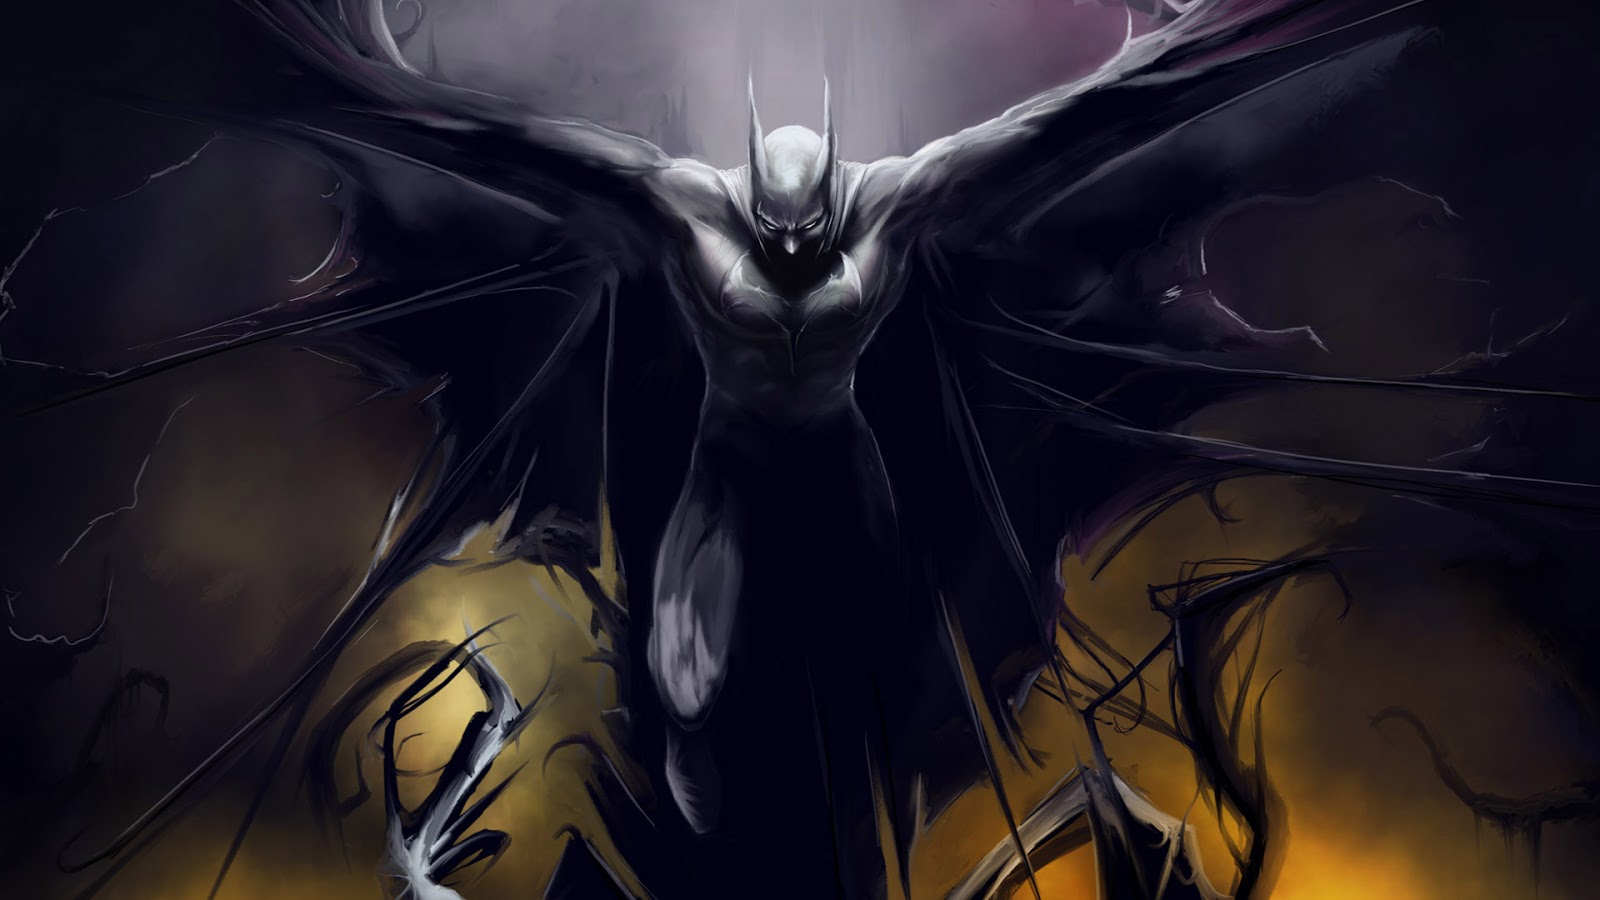 Evil Batman Monster Wallpaper For Desktop